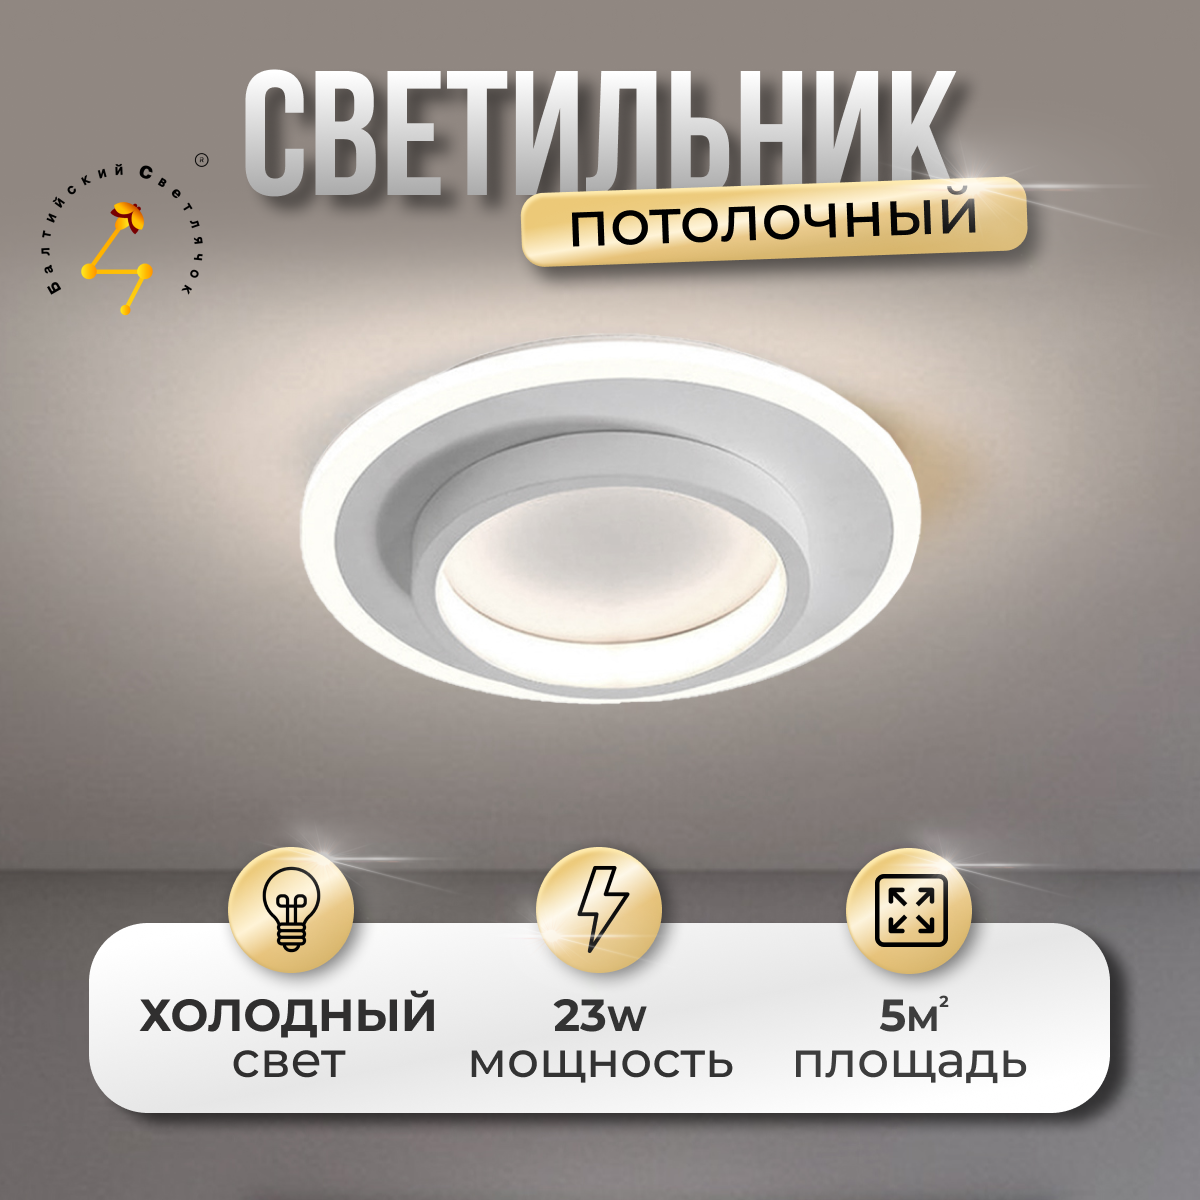 Светильник потолочный LED 23 Вт, холодный свет, Балтийский Светлячок, MC-1005X